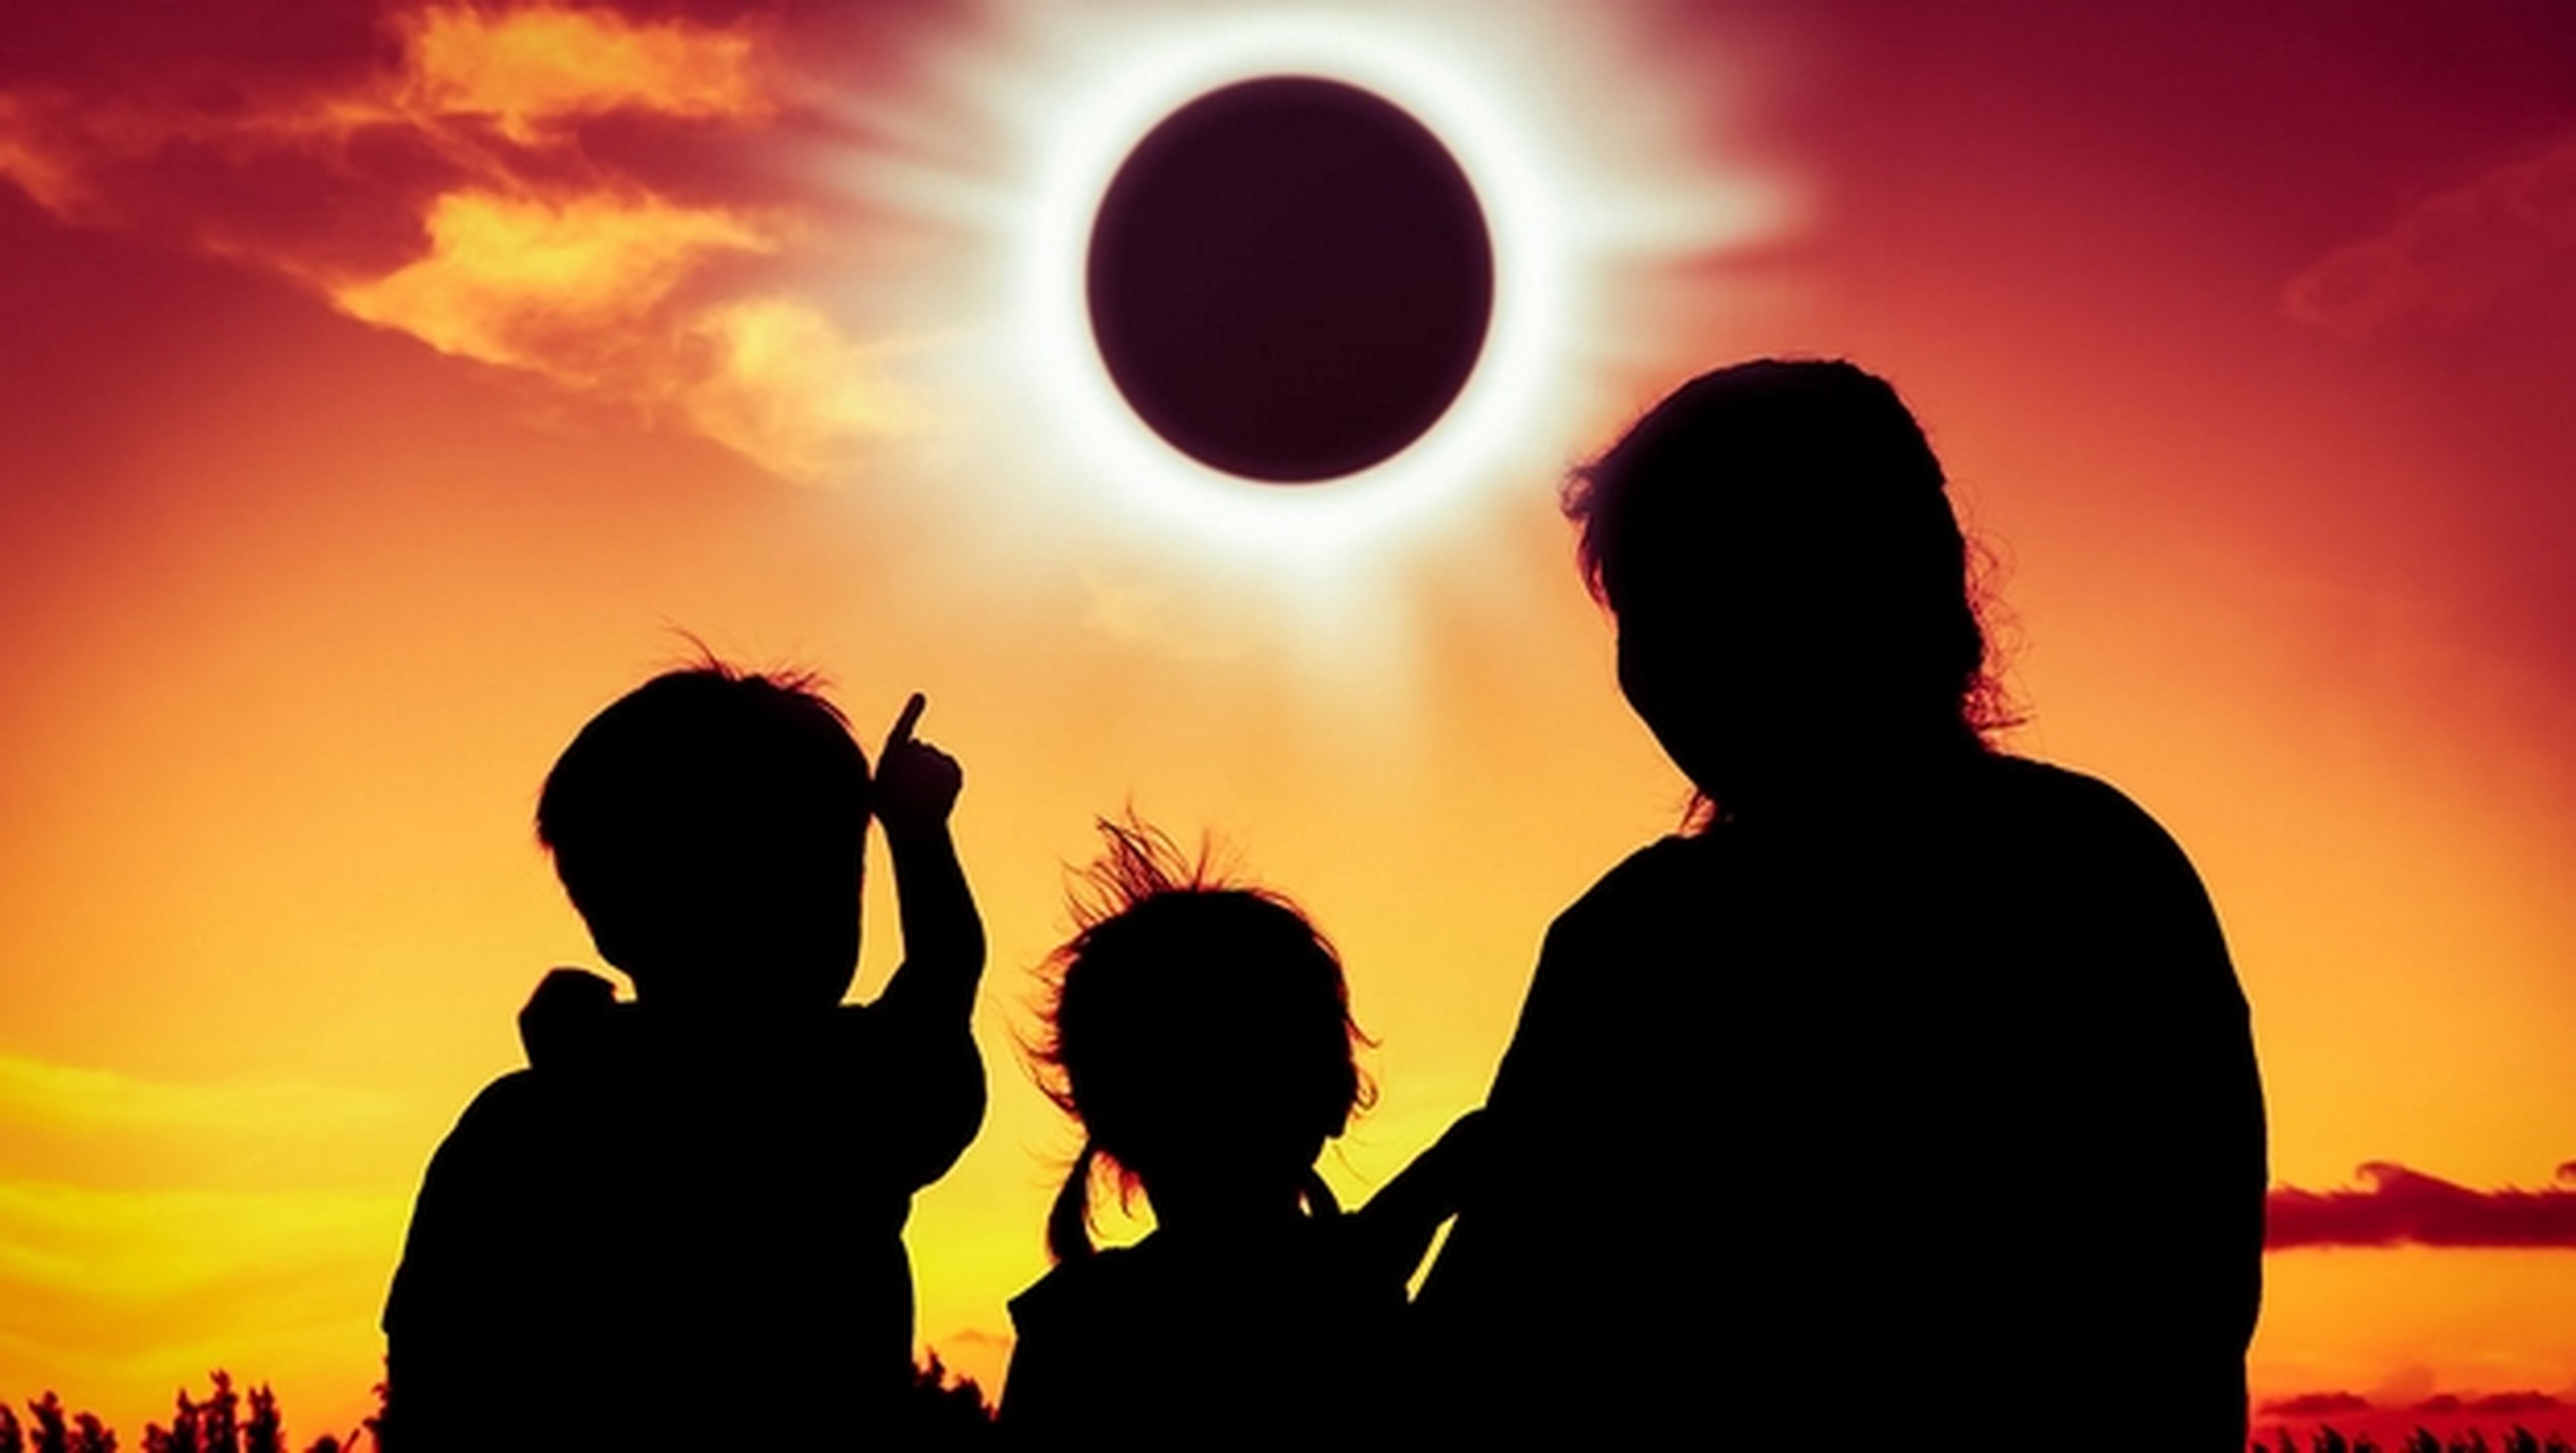 Dónde y cómo ver el eclipse solar del 21 de agosto de 2017